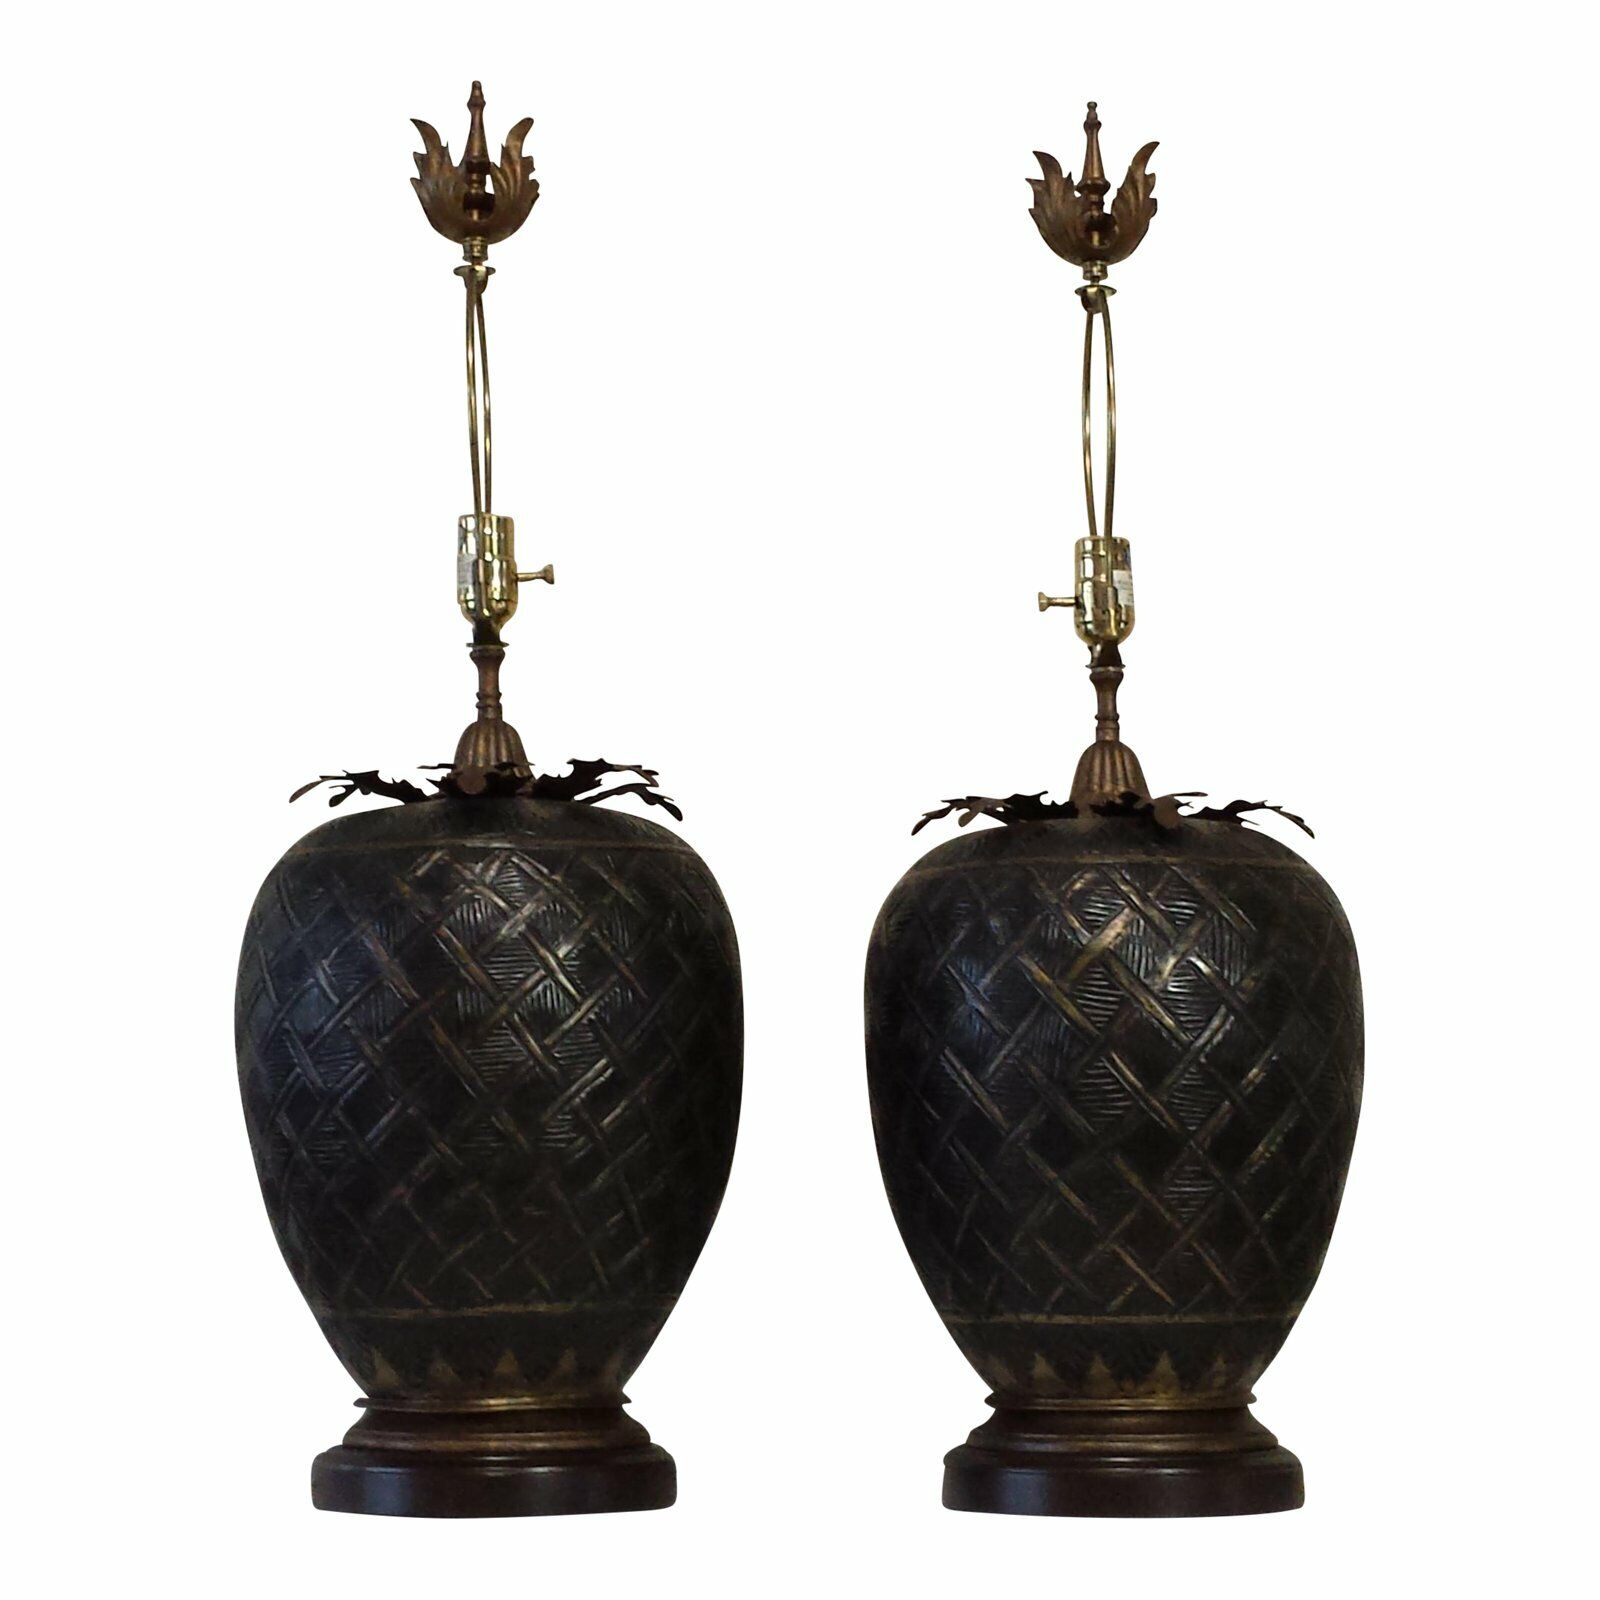  John Richard Round Brass Table Lamps pair Acorn Style  JOHN RICHARD